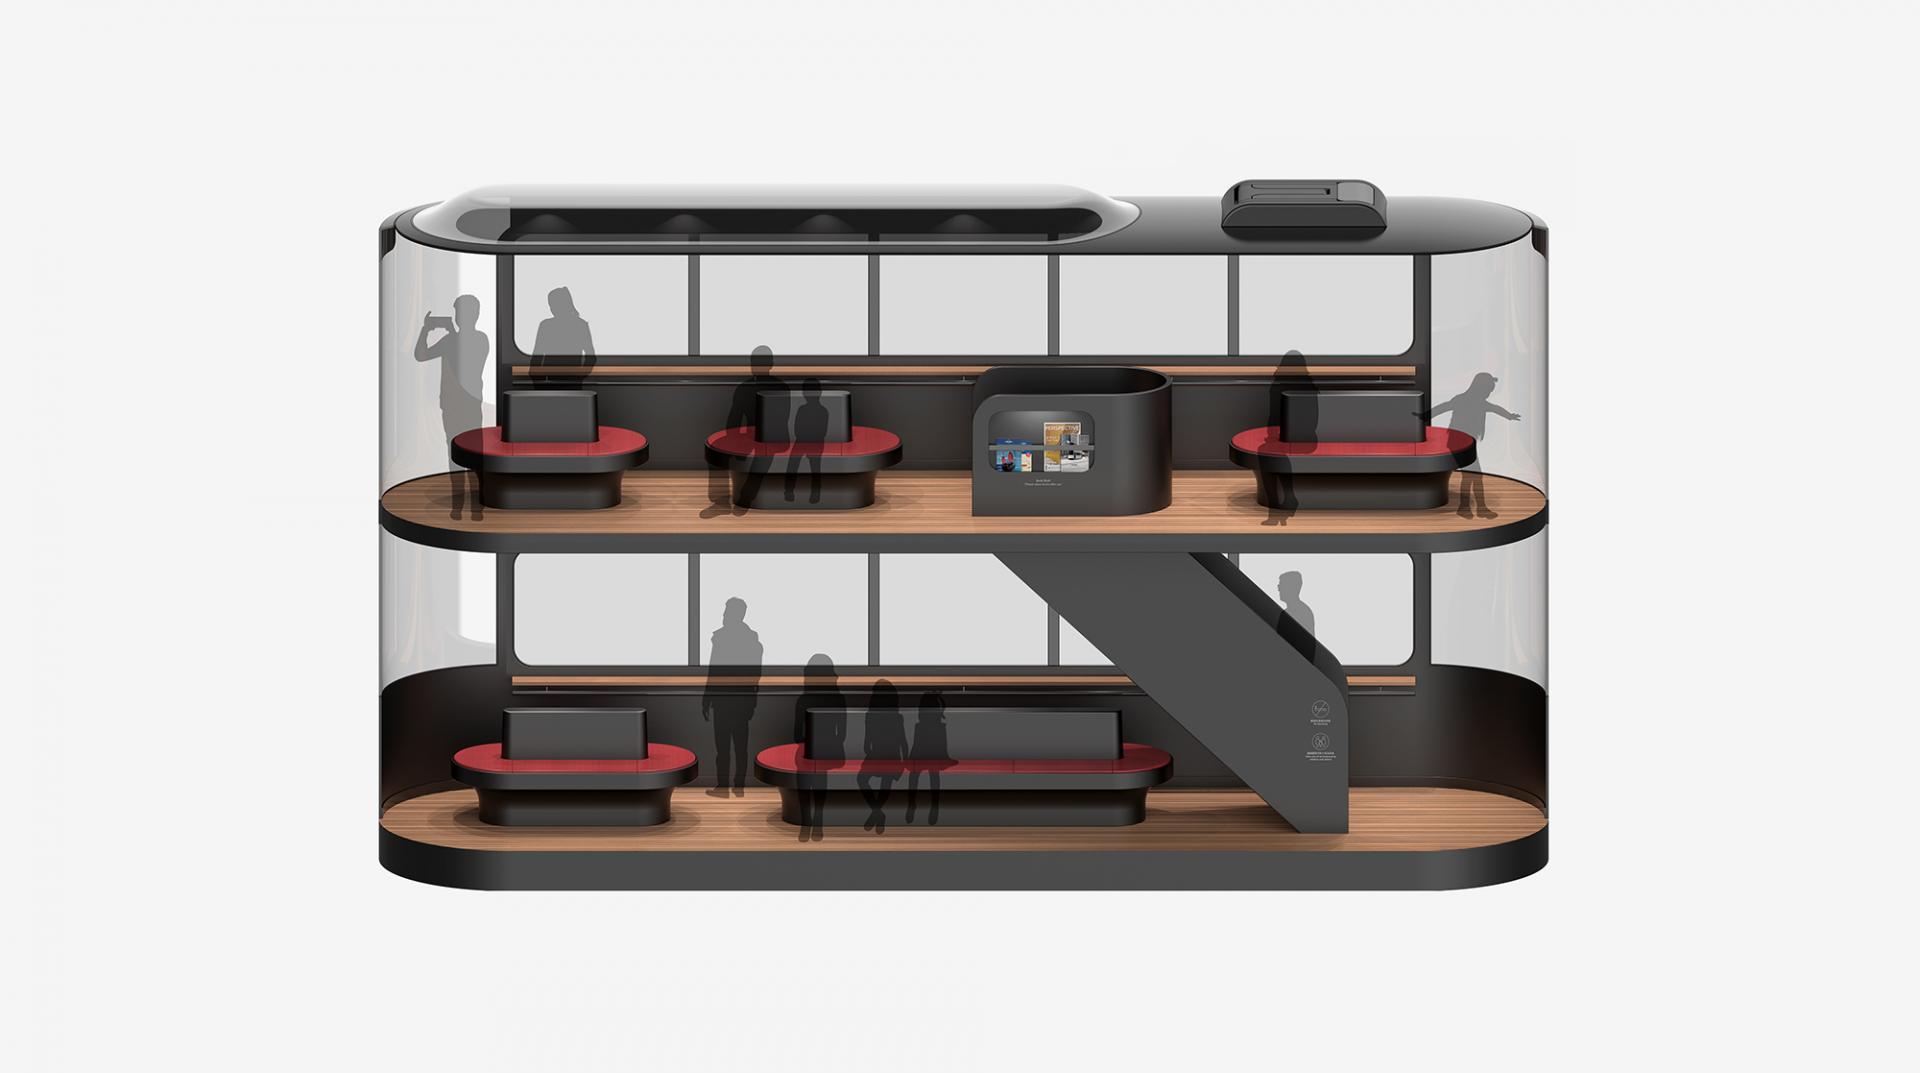 Island: A Driverless Social-Distancing Tram Designed For Hong Kong